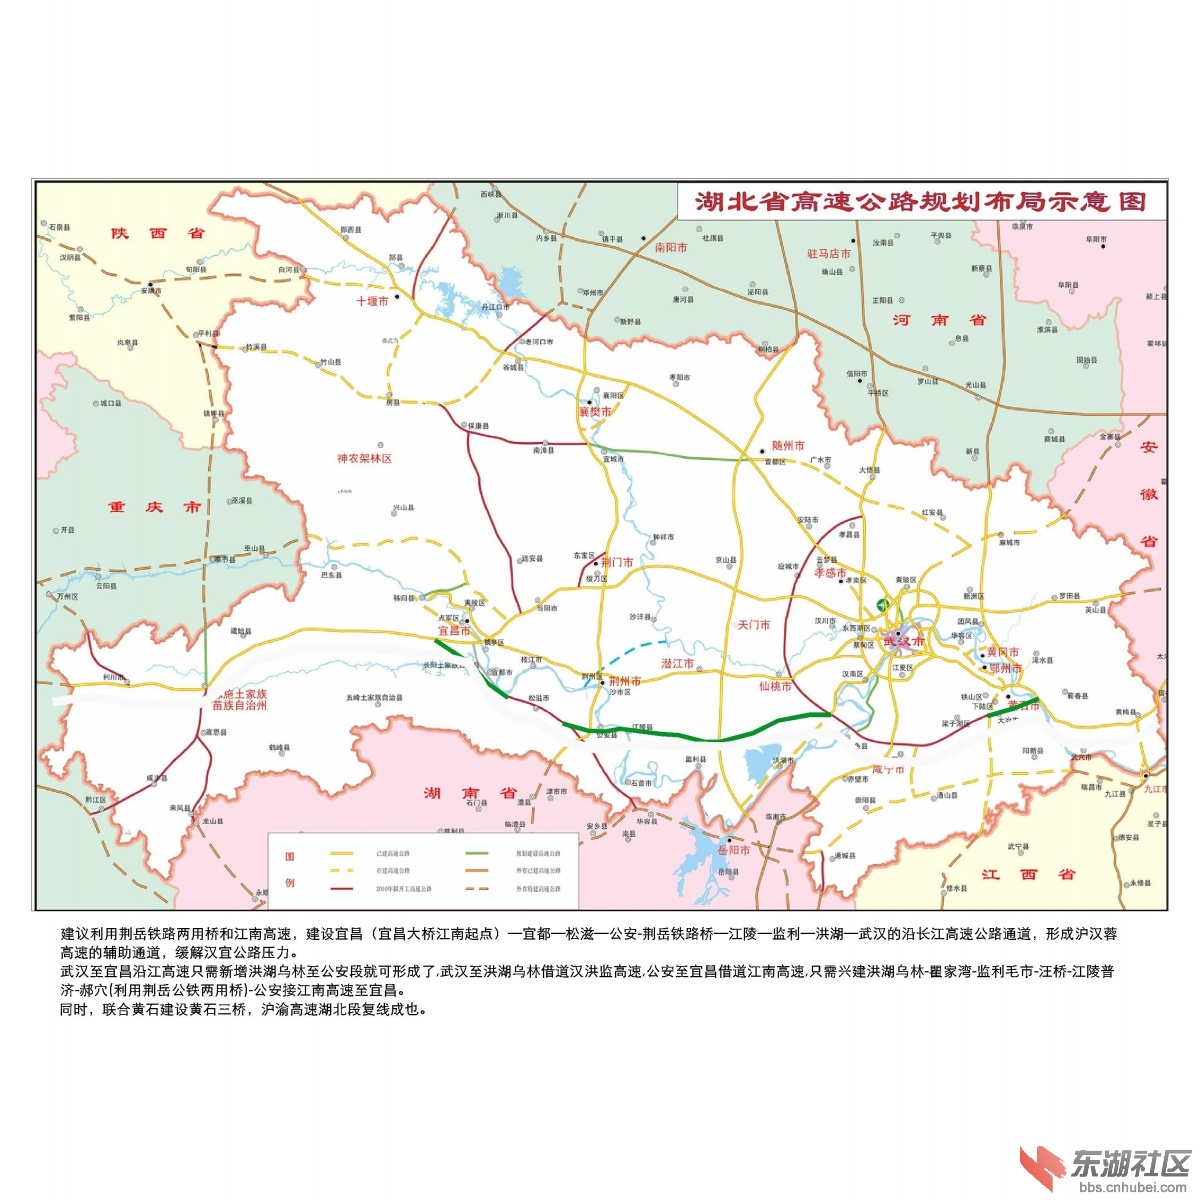 《湖北省城镇化与城镇发展战略规划2010-2030》征求意见稿图片